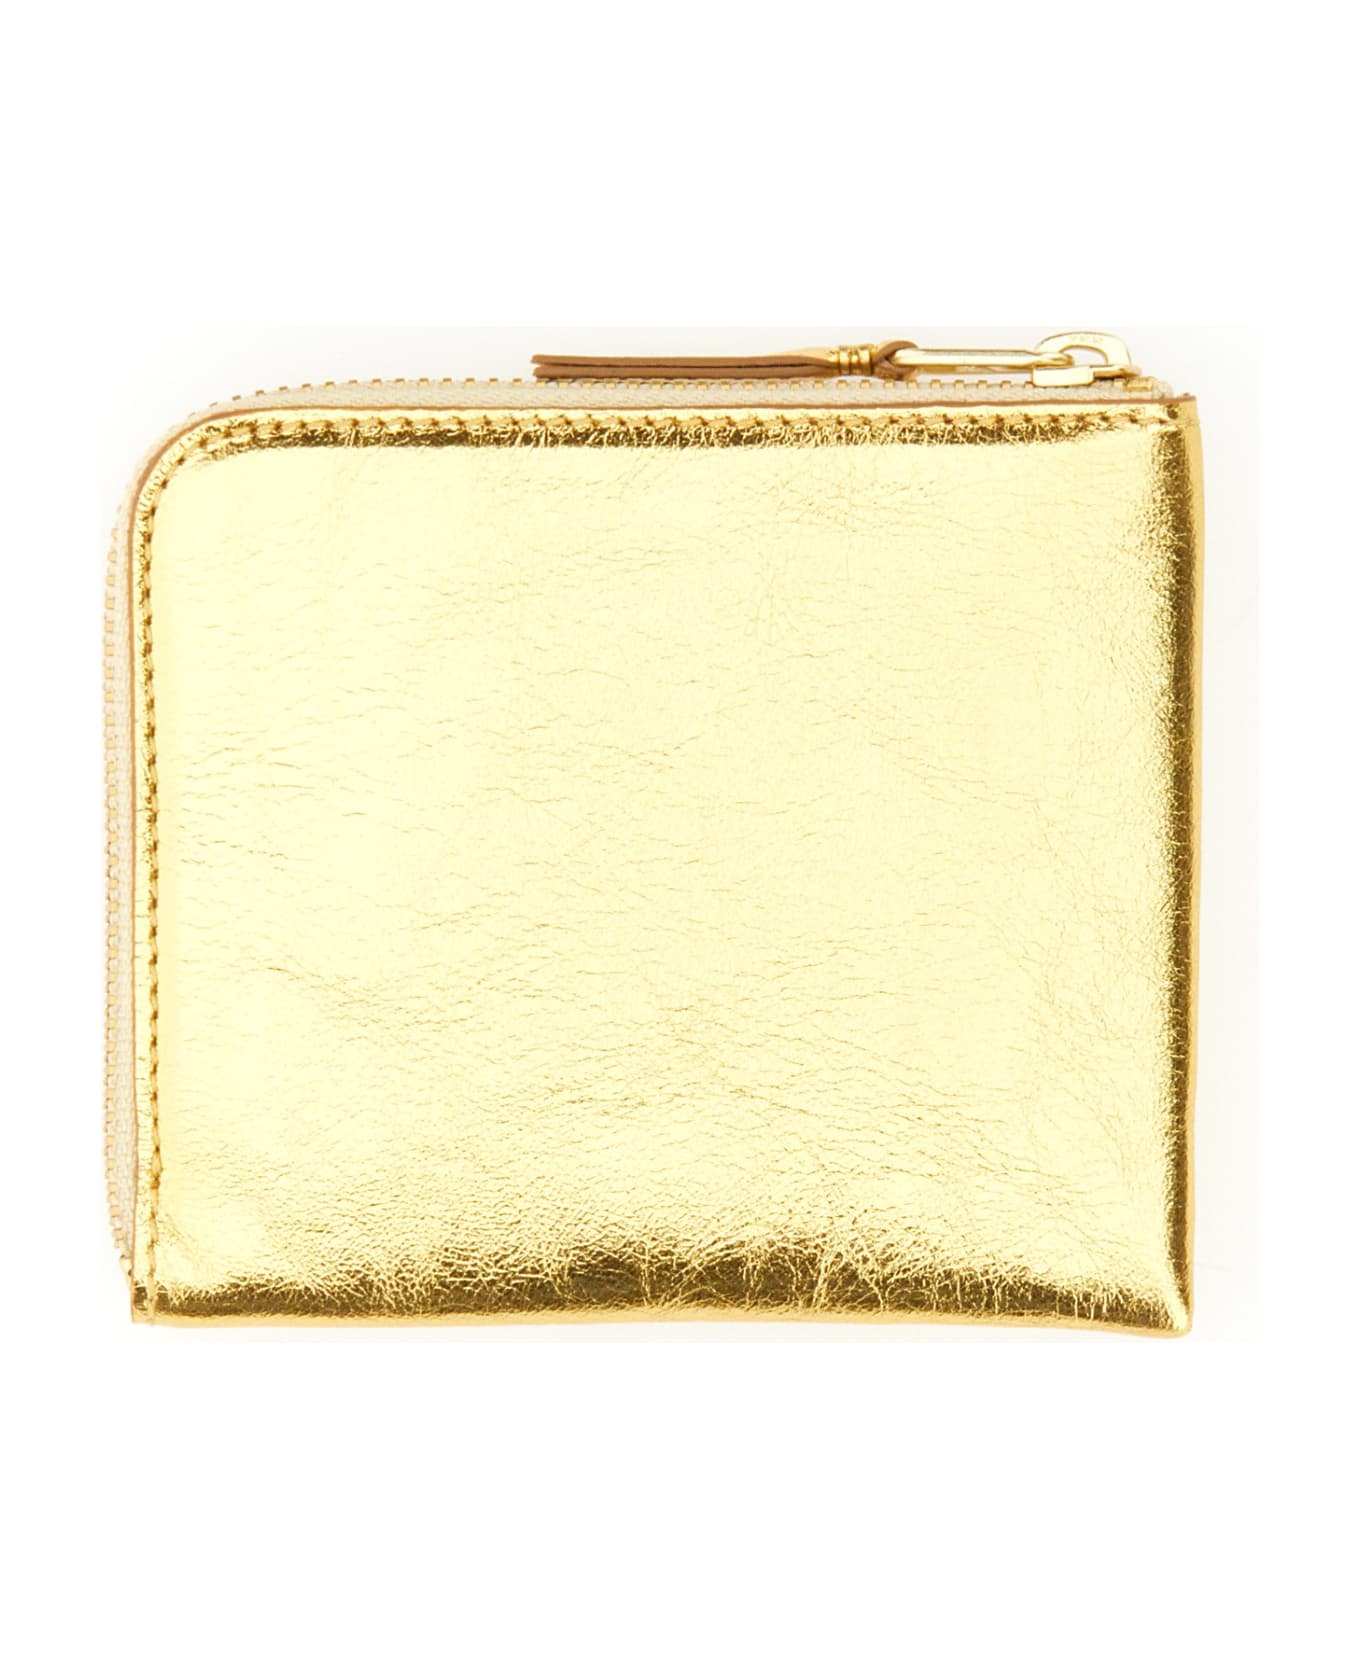 Comme des Garçons Wallet Leather Wallet - Golden 財布